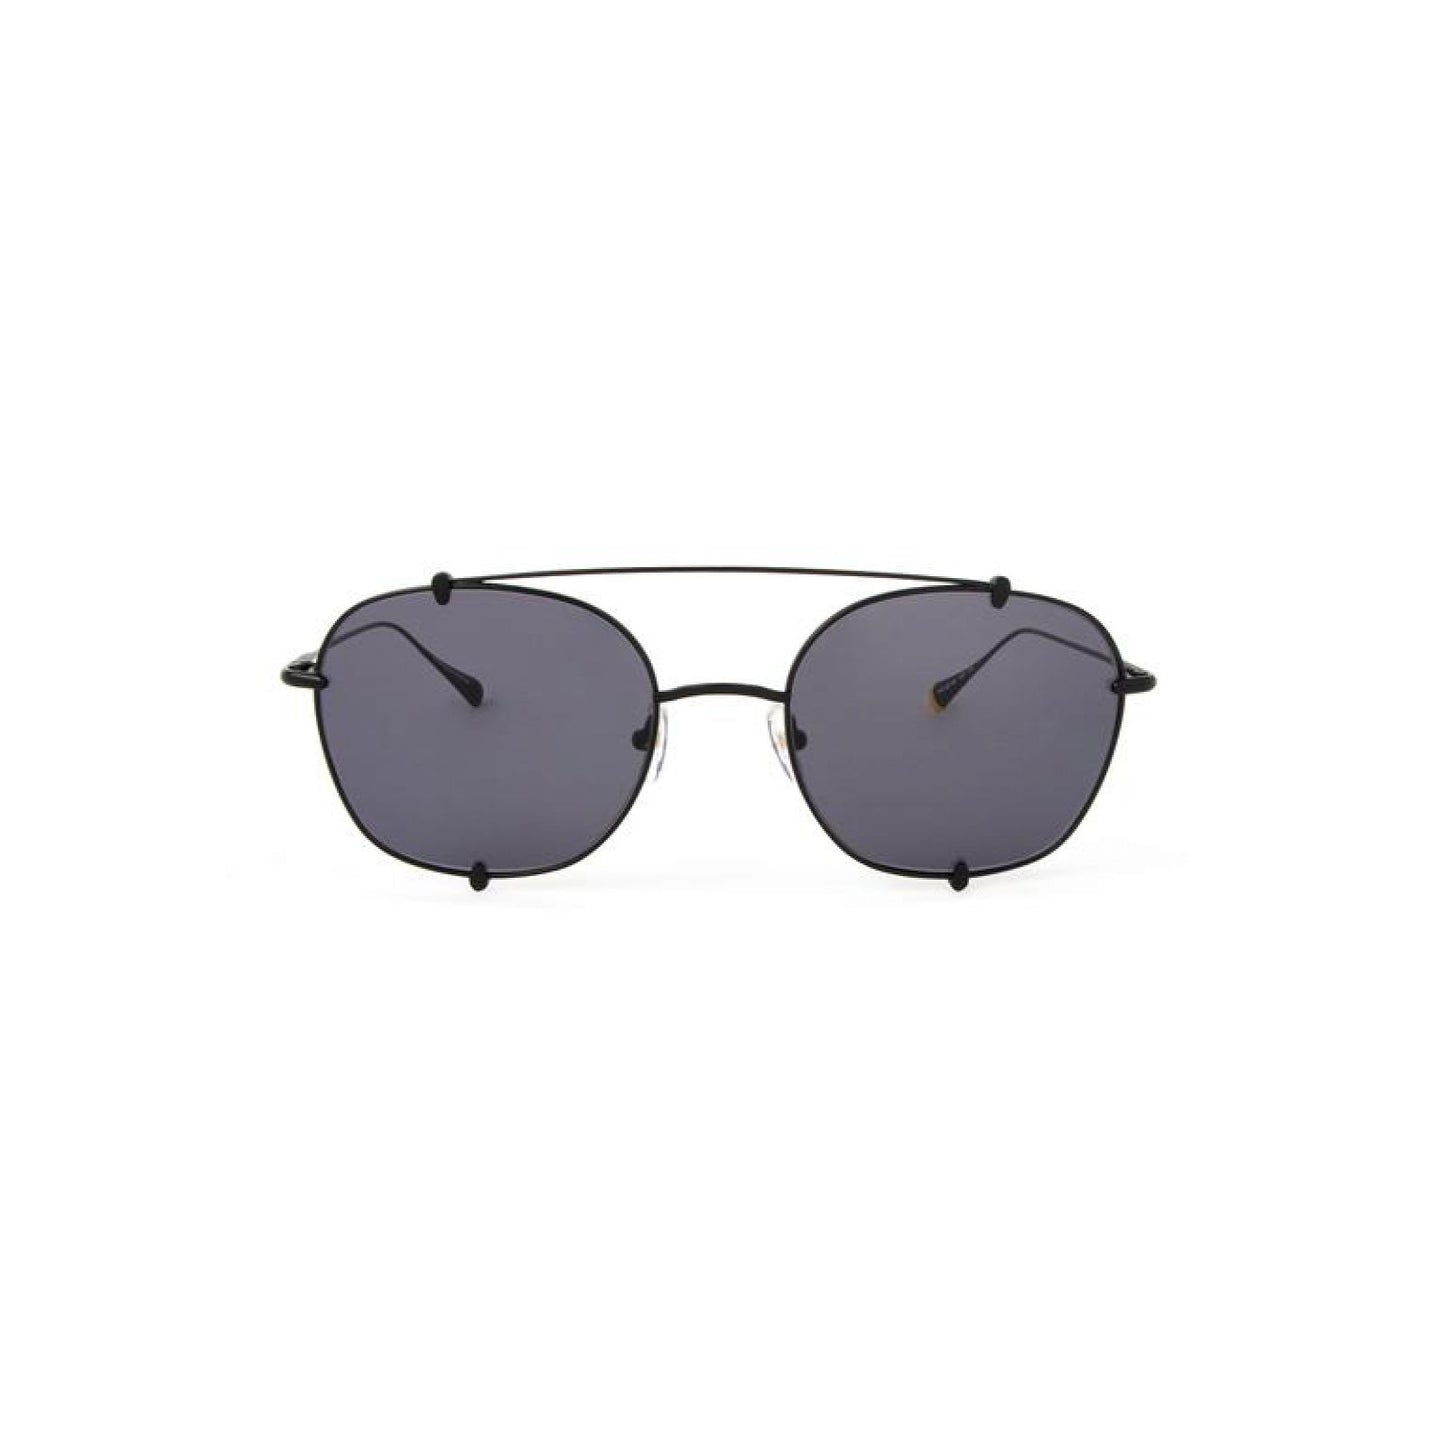 Gafas Invicta Eyewear I 20313-dna-01